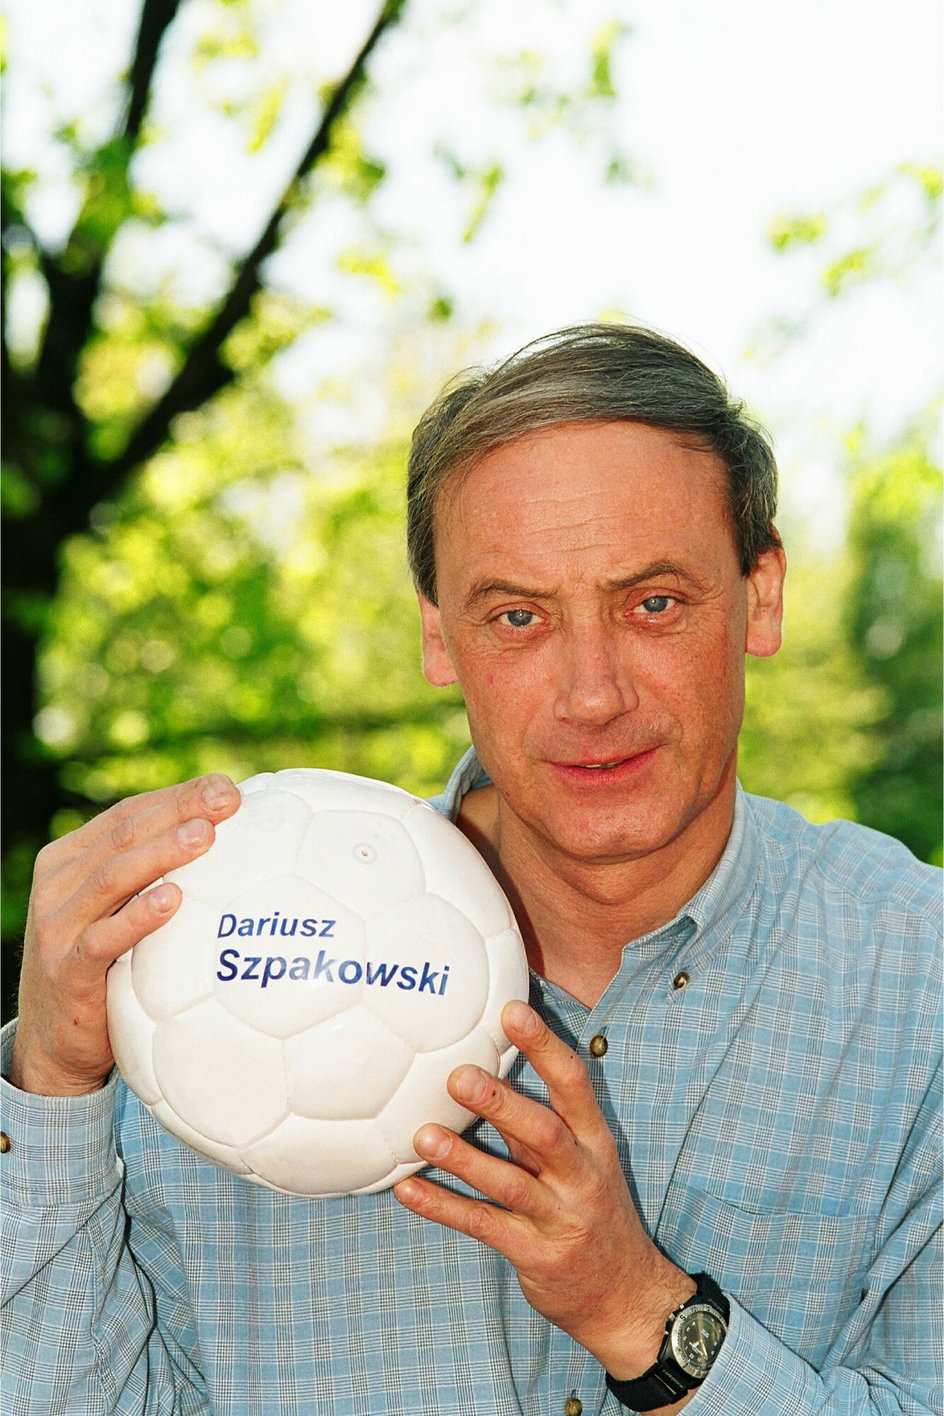 Dariusz Szpakowski